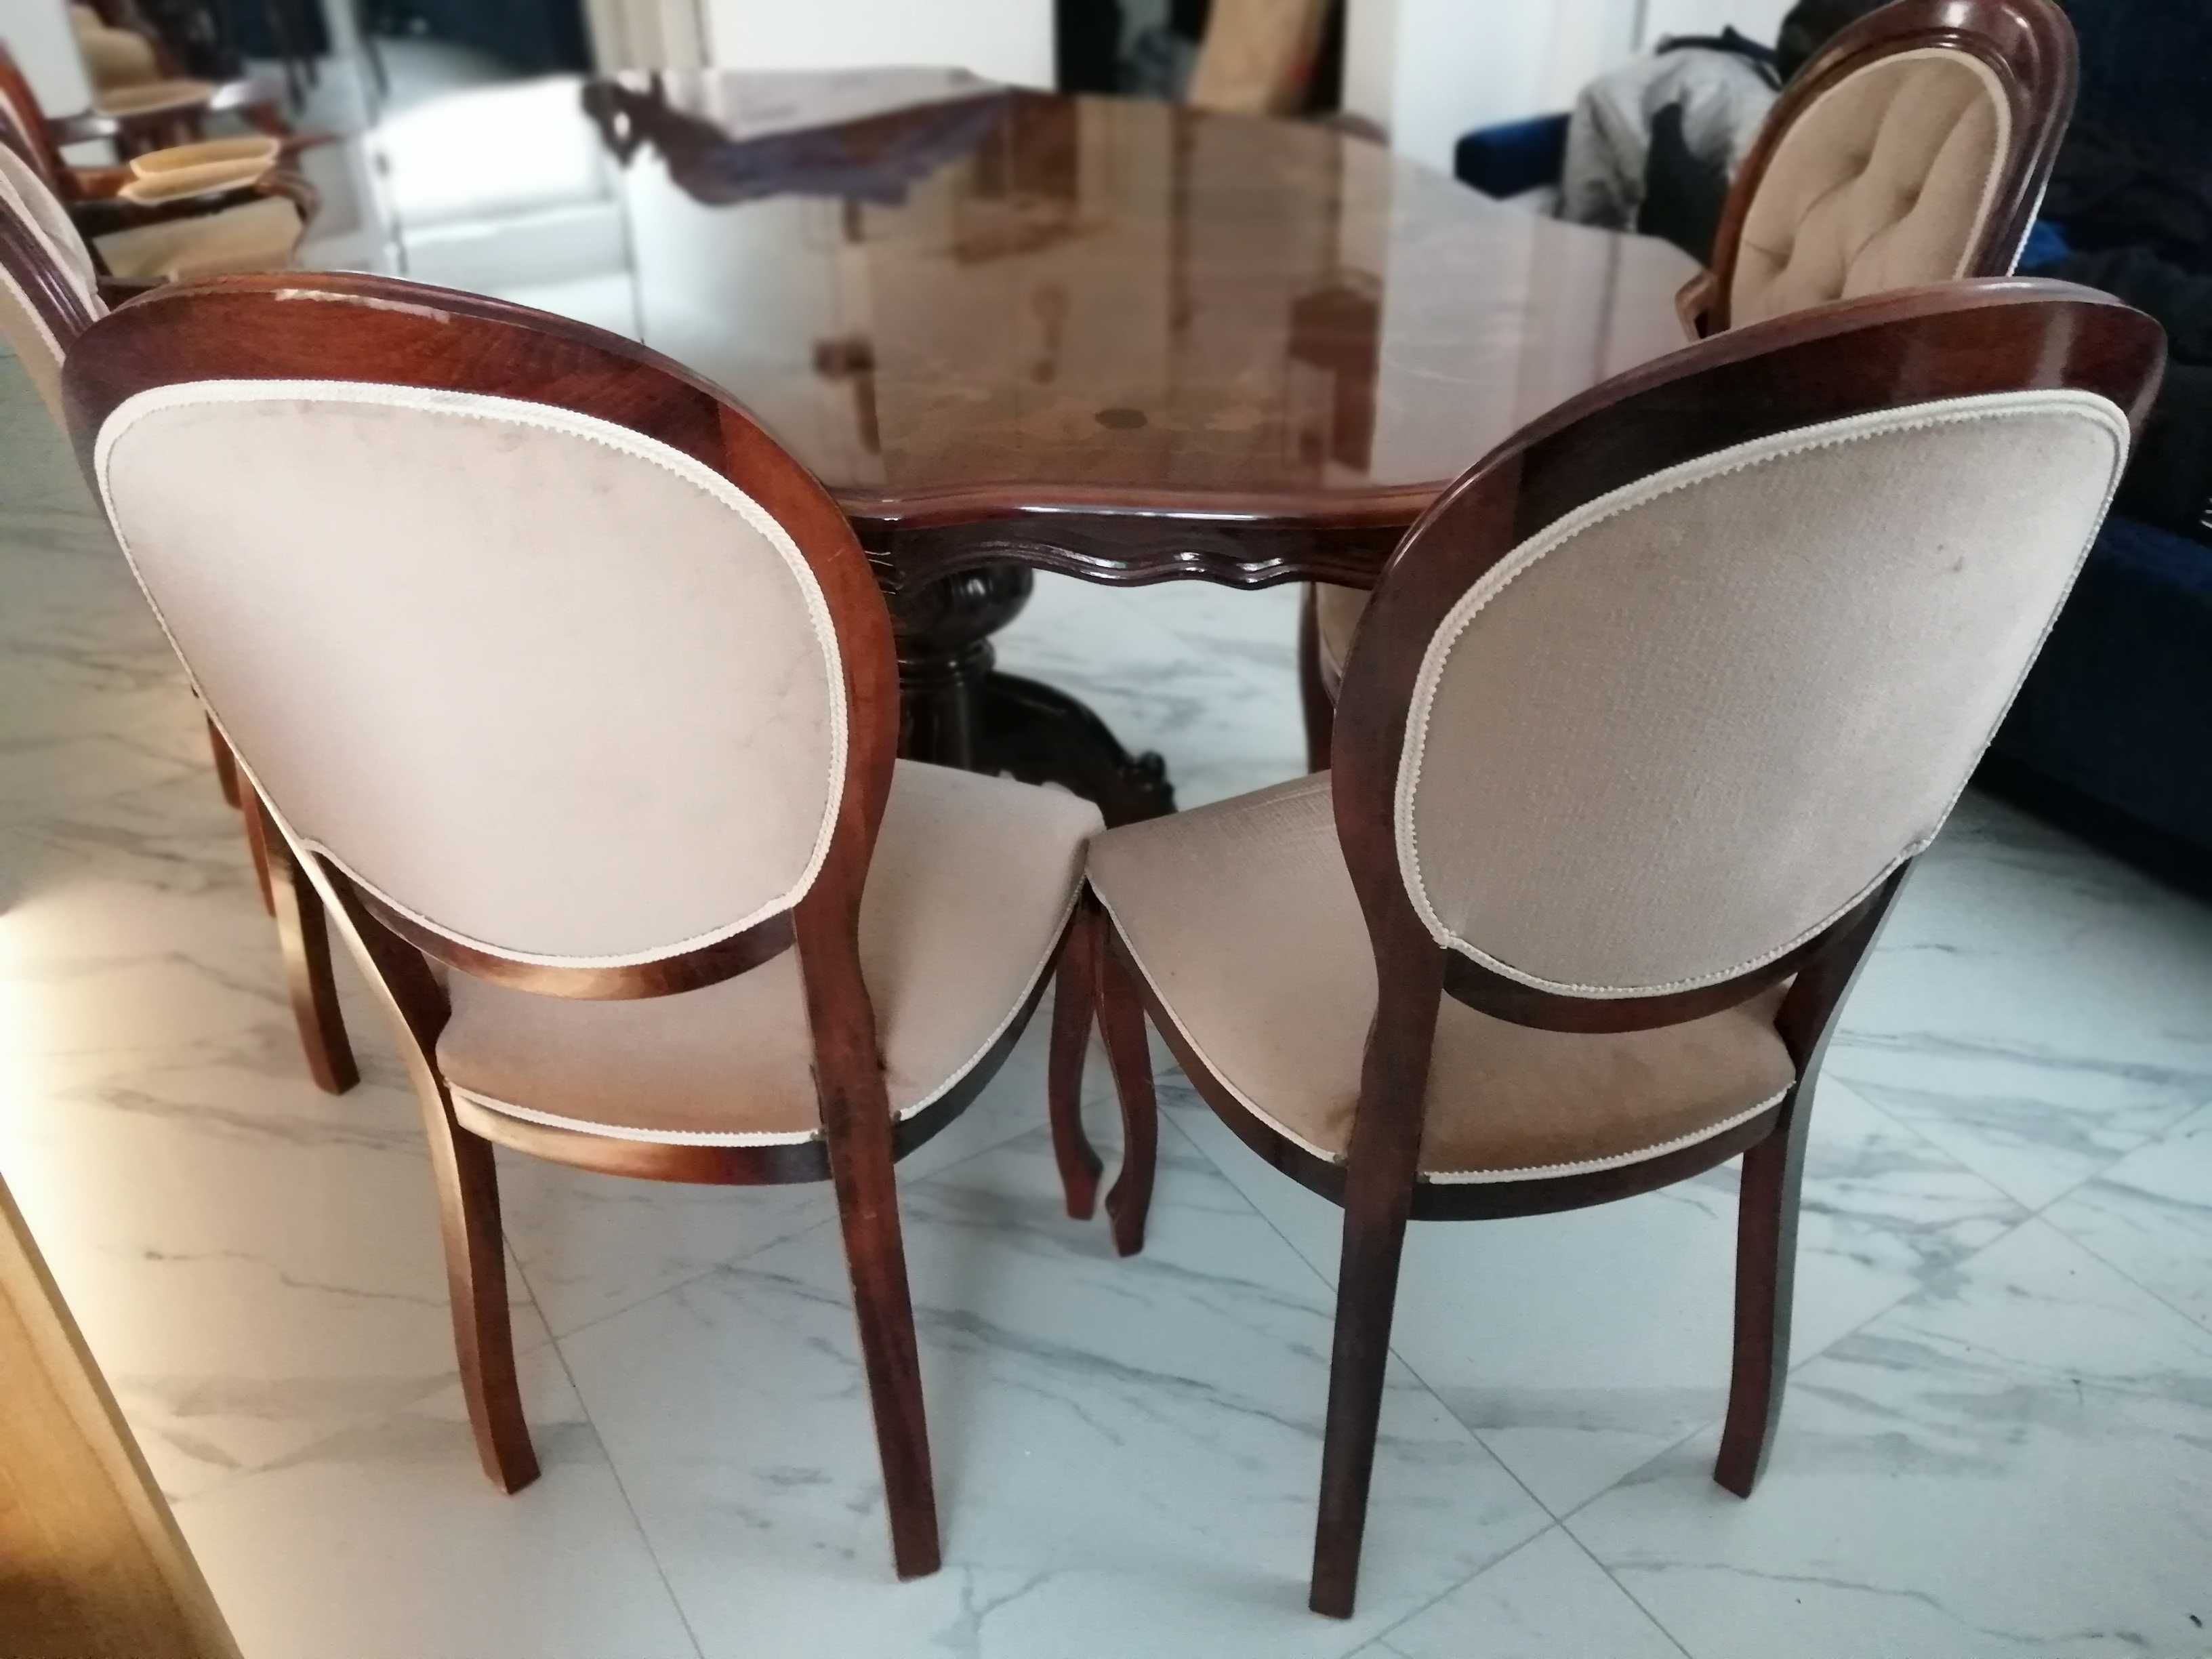 Stół z krzesłami - styl ludwikowskim